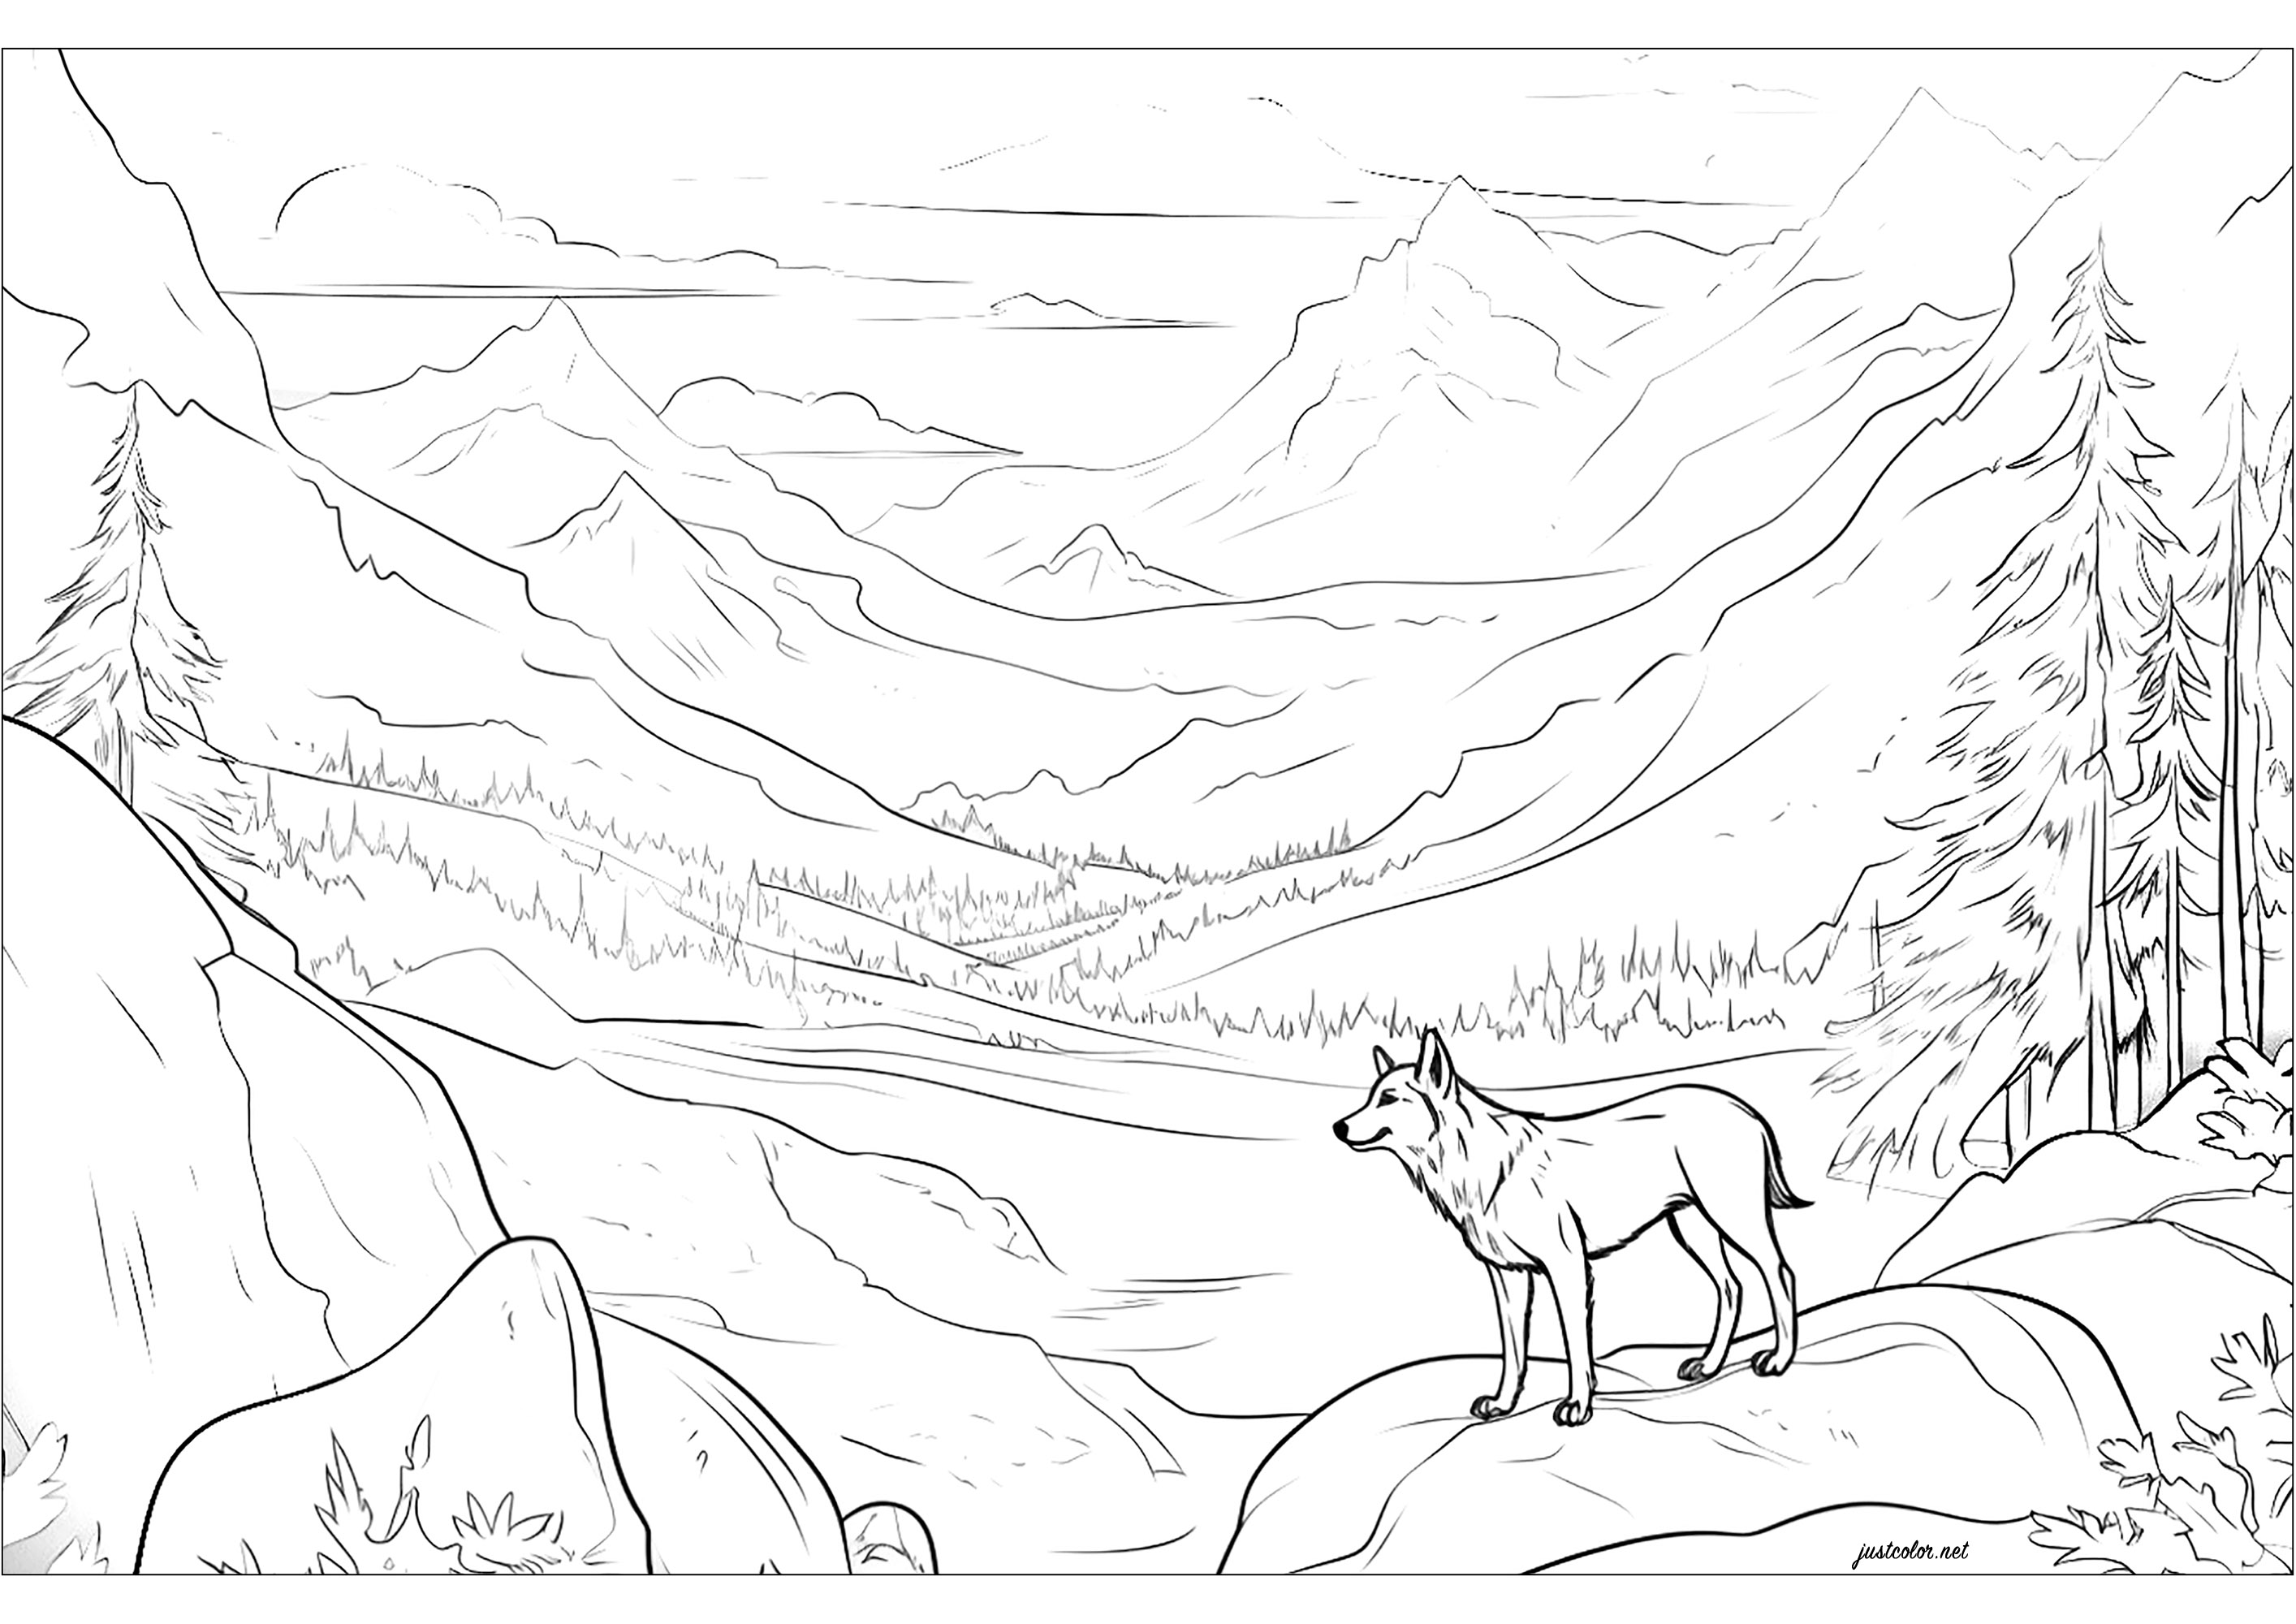 Joli loup admirant un paysage montagneux. Les montagnes se dressent majestueusement, avec leurs sommets enneigés se détachant sur l'horizon